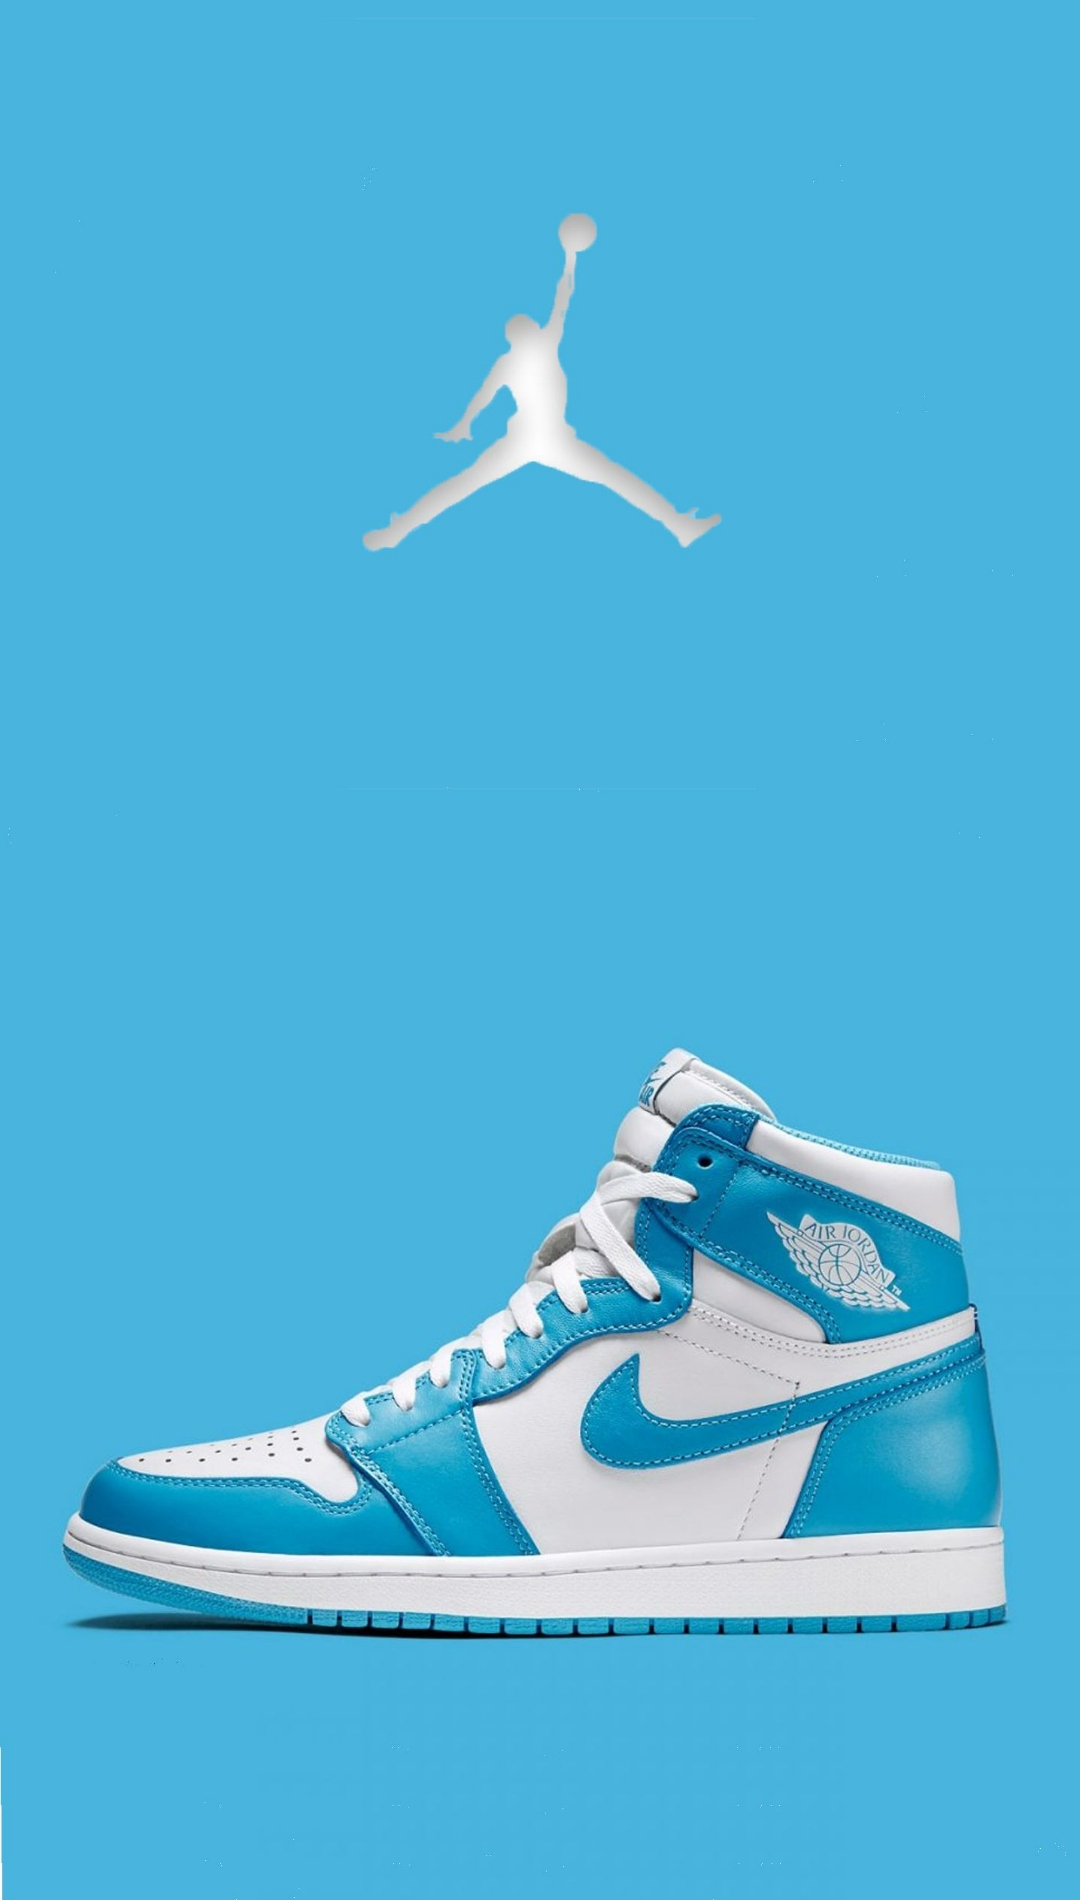 New Jordan Shoes Wallpaper